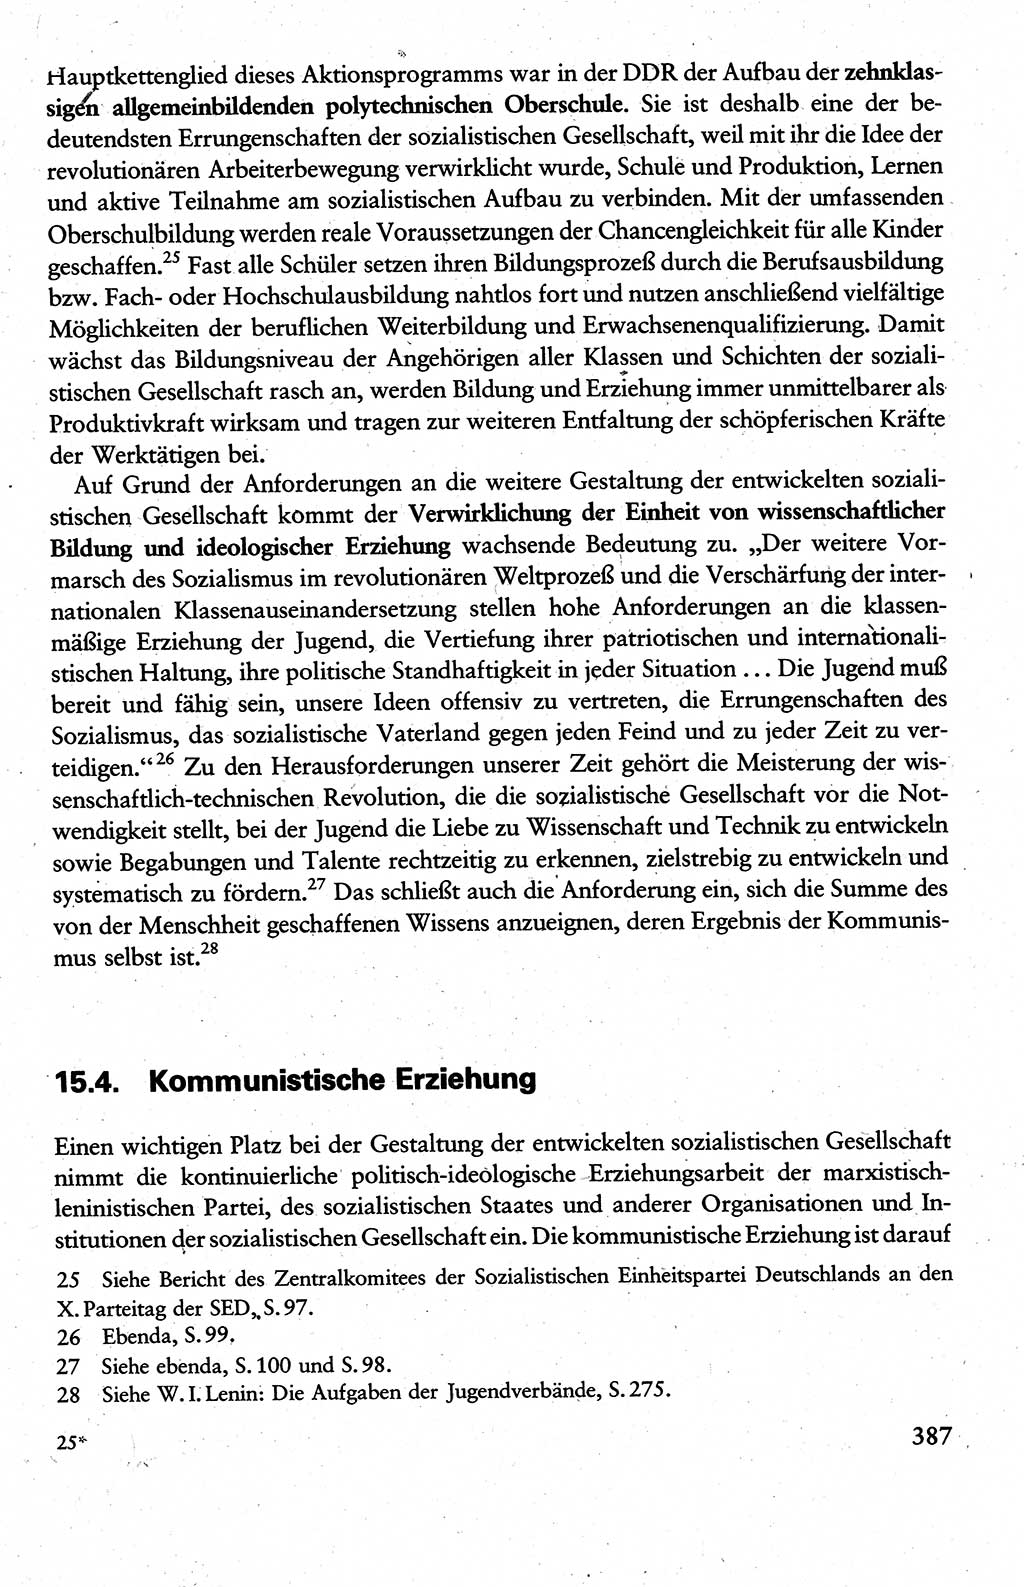 Wissenschaftlicher Kommunismus [Deutsche Demokratische Republik (DDR)], Lehrbuch für das marxistisch-leninistische Grundlagenstudium 1983, Seite 387 (Wiss. Komm. DDR Lb. 1983, S. 387)